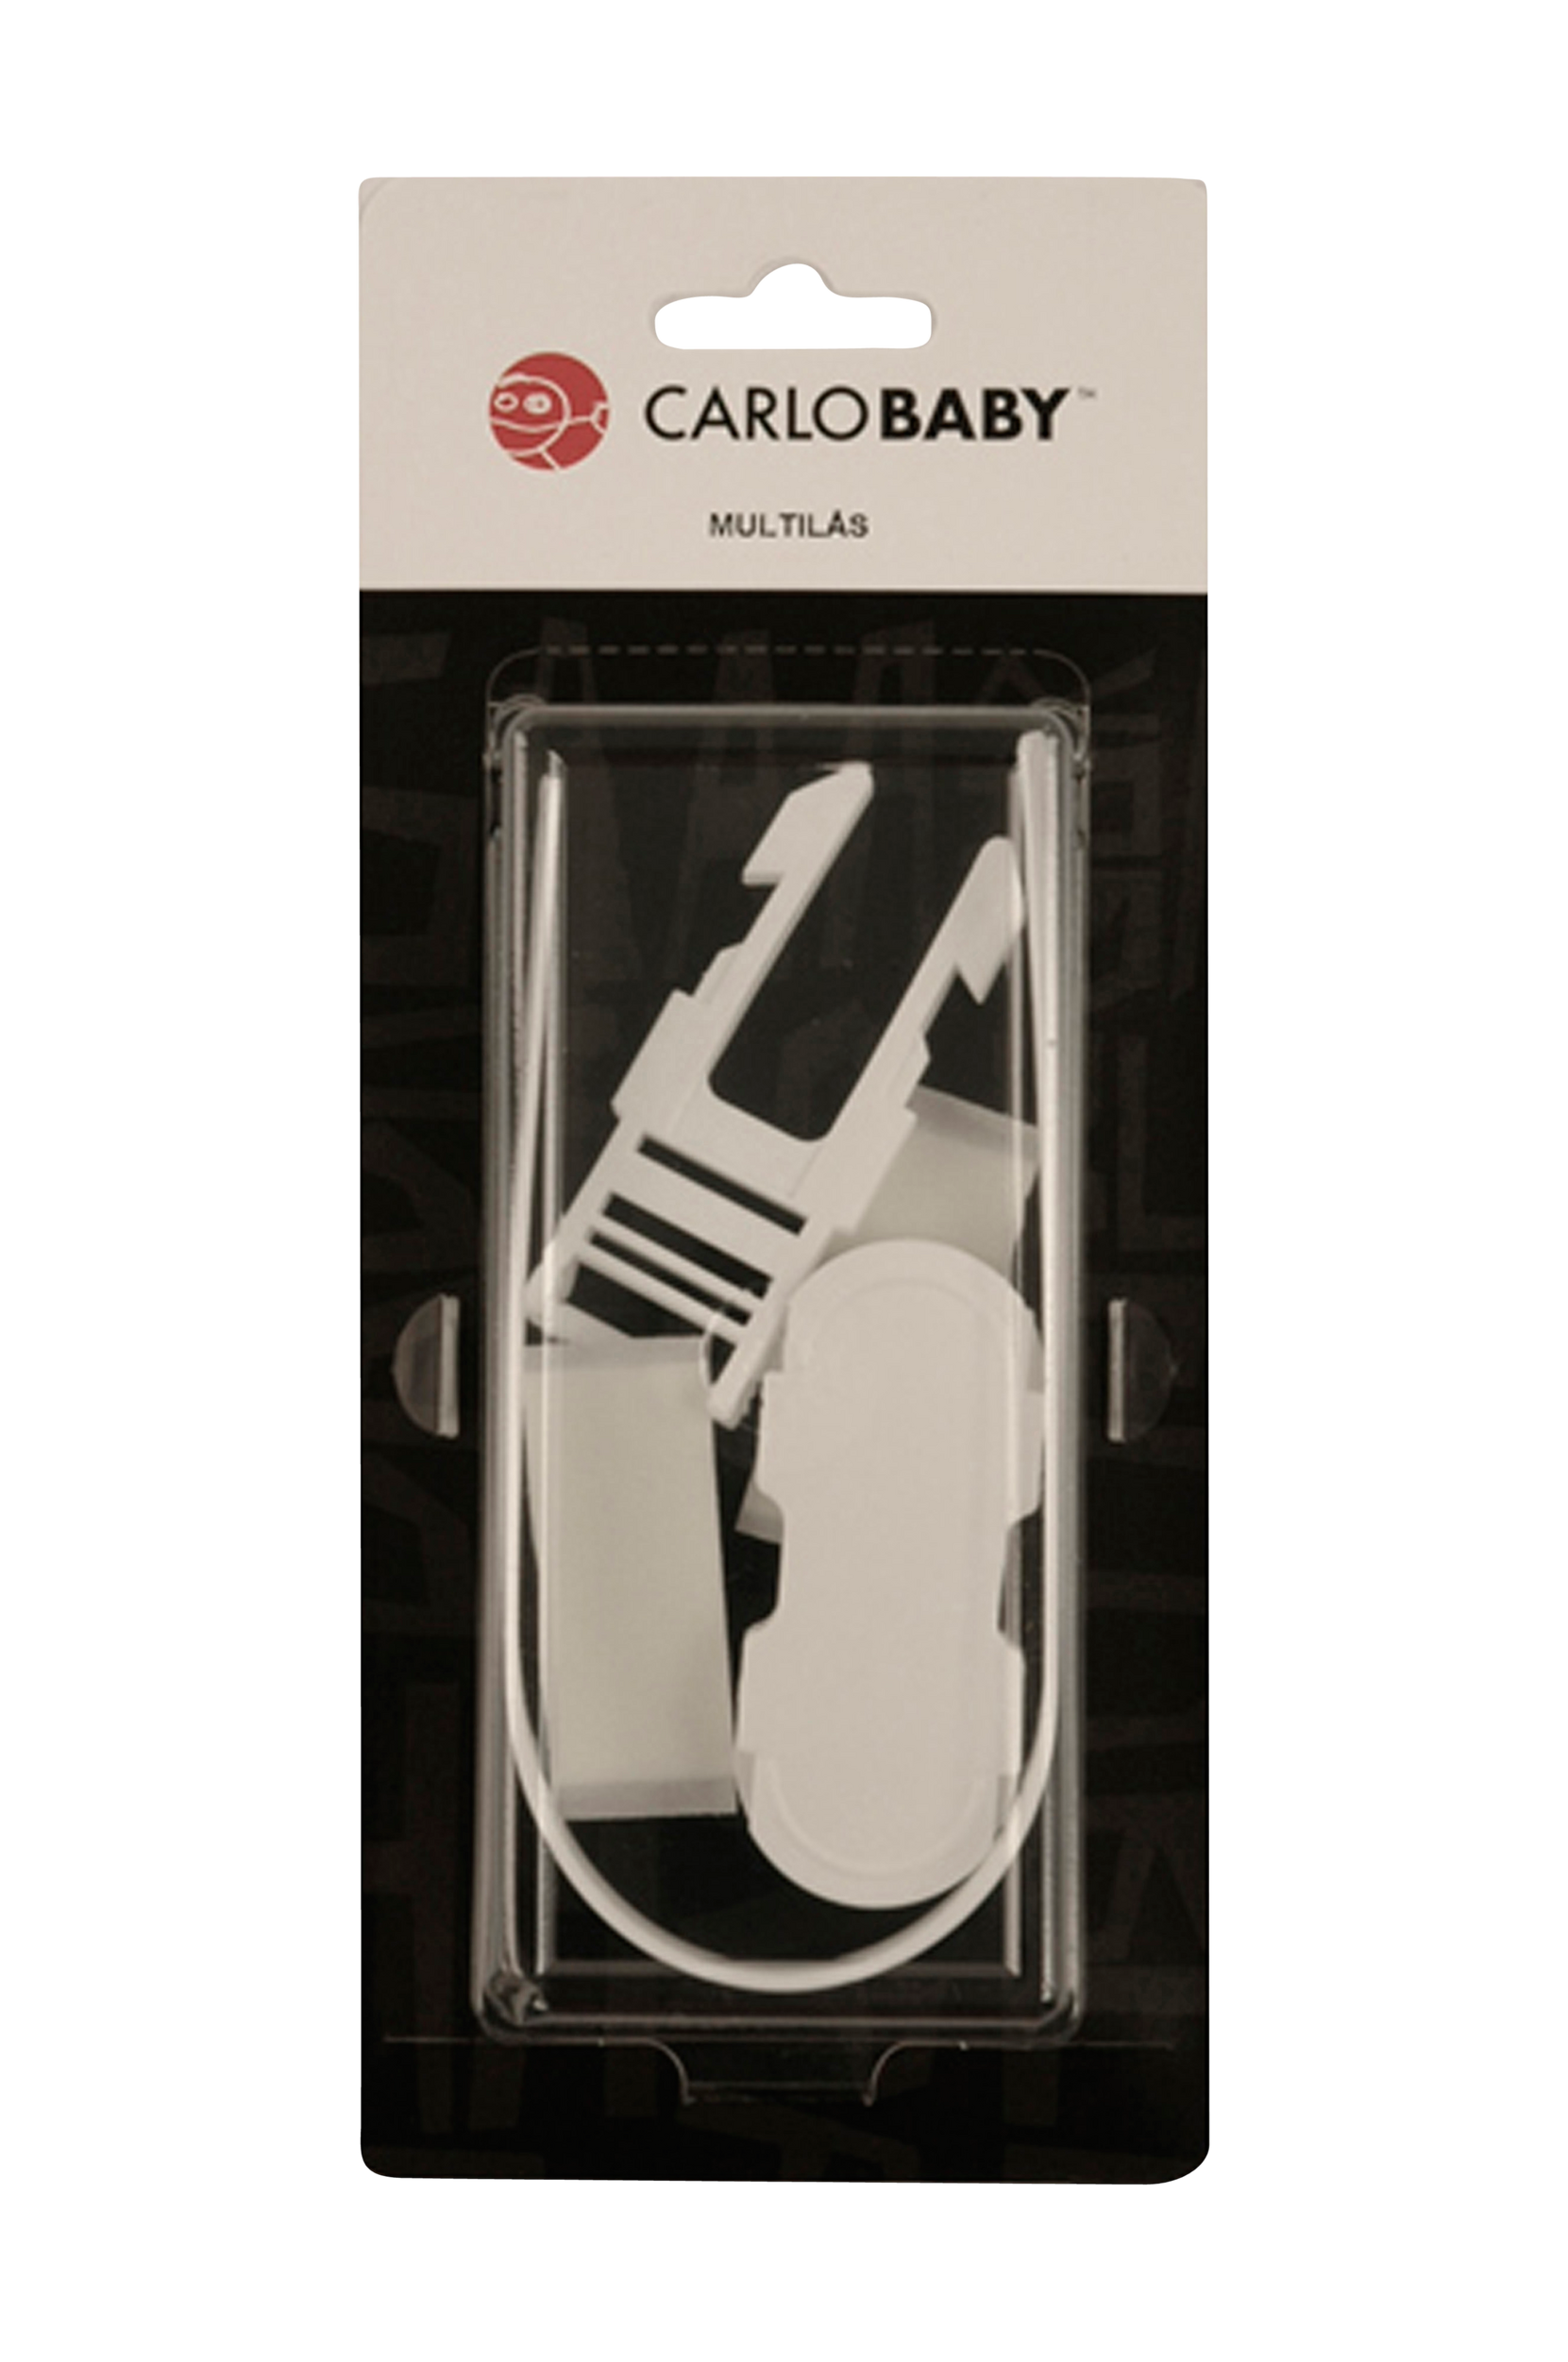 Carlobaby - Multilås